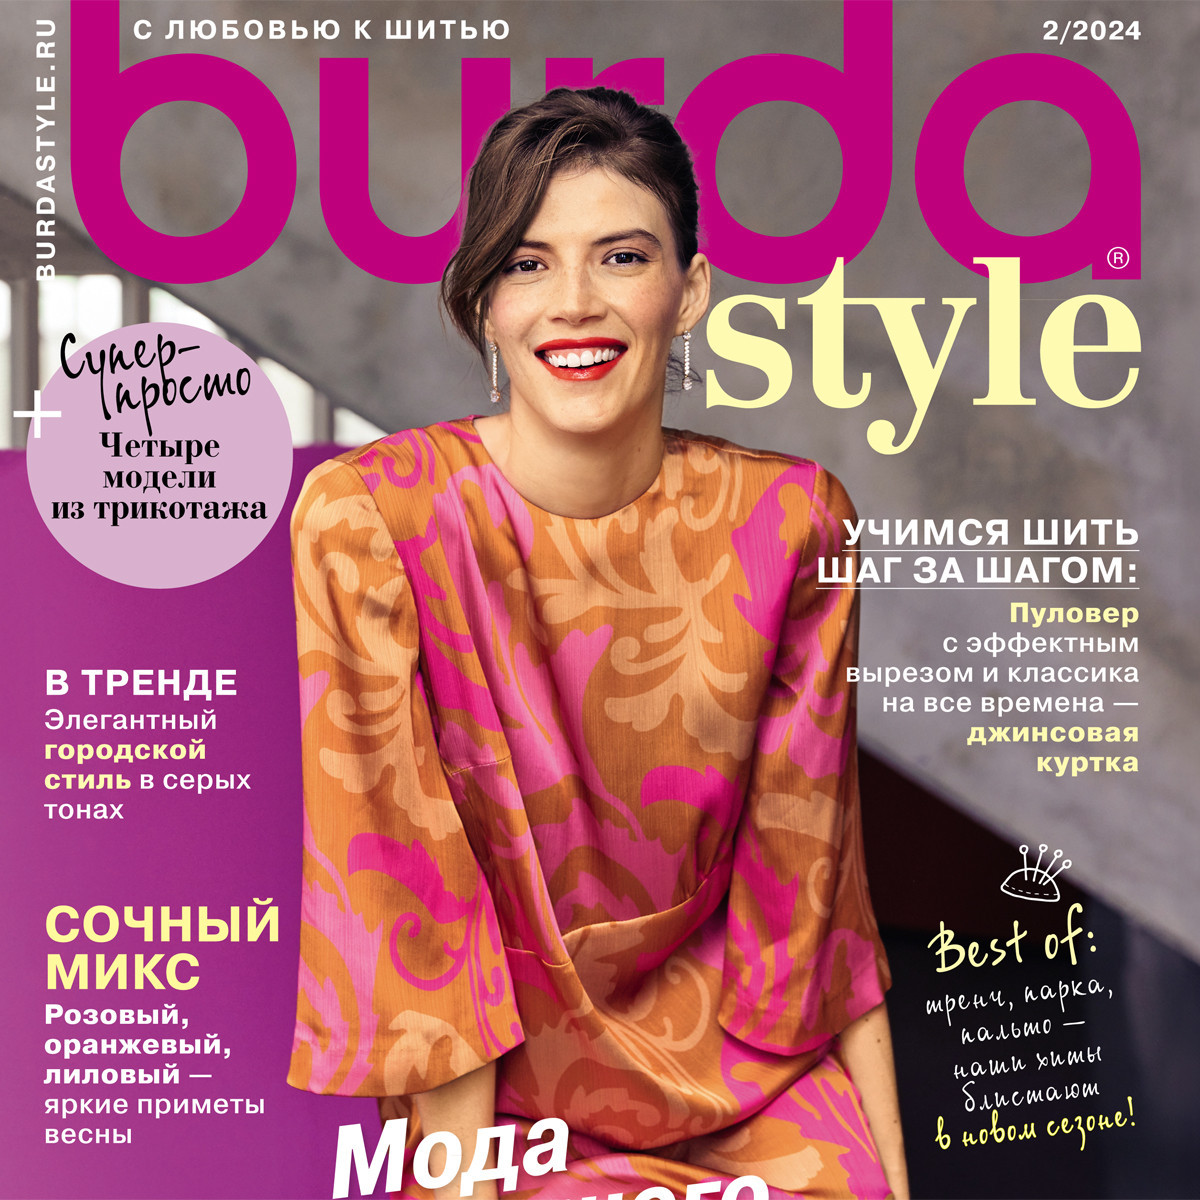 Готовим стильный гардероб к весне: обзор самых ярких моделей из Burda Style 2/2024